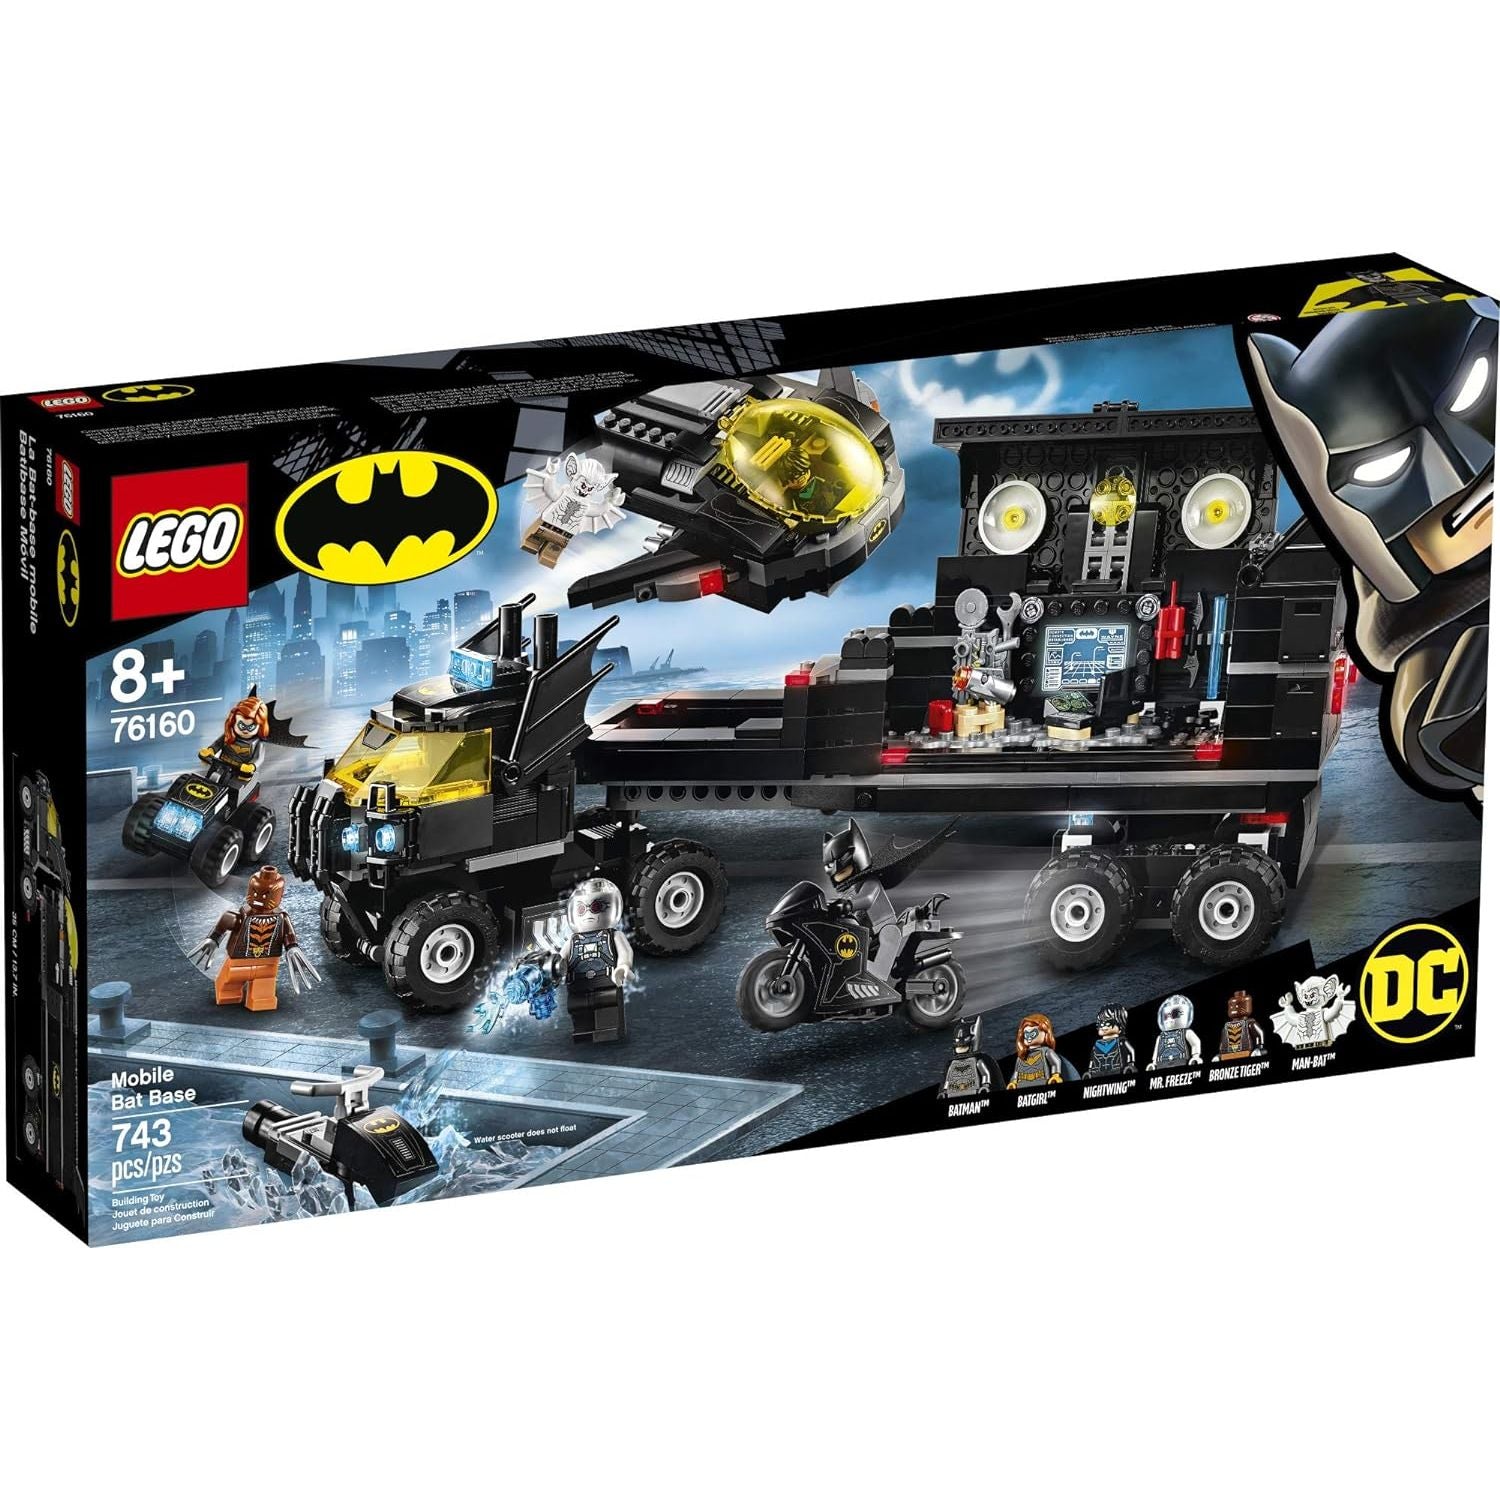 LEGO 76160 DC Mobile Bat Base 76160 Batman Building Toy, Gotham City Batcave Playset and Action Minifigures (743 Pieces)